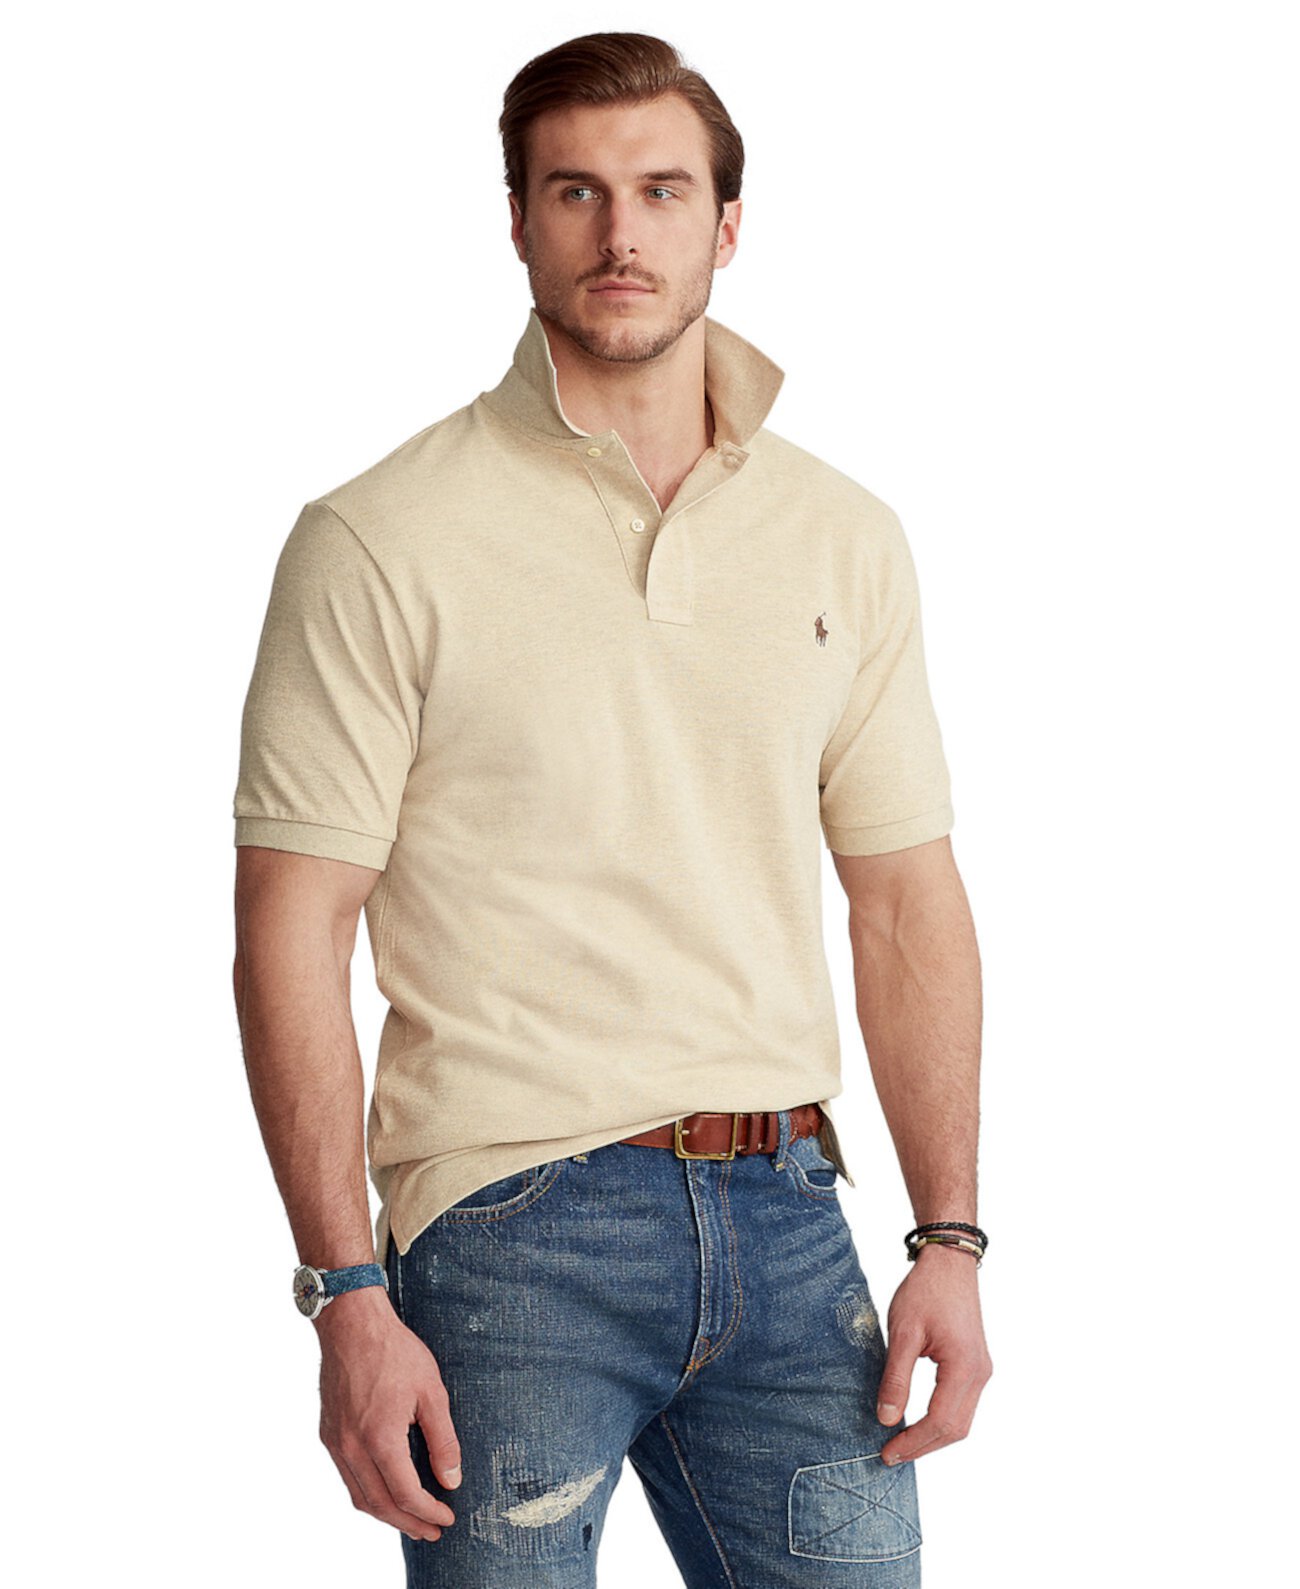 Мужская футболка-поло из хлопковой сетки классического кроя для больших и высоких Ralph Lauren